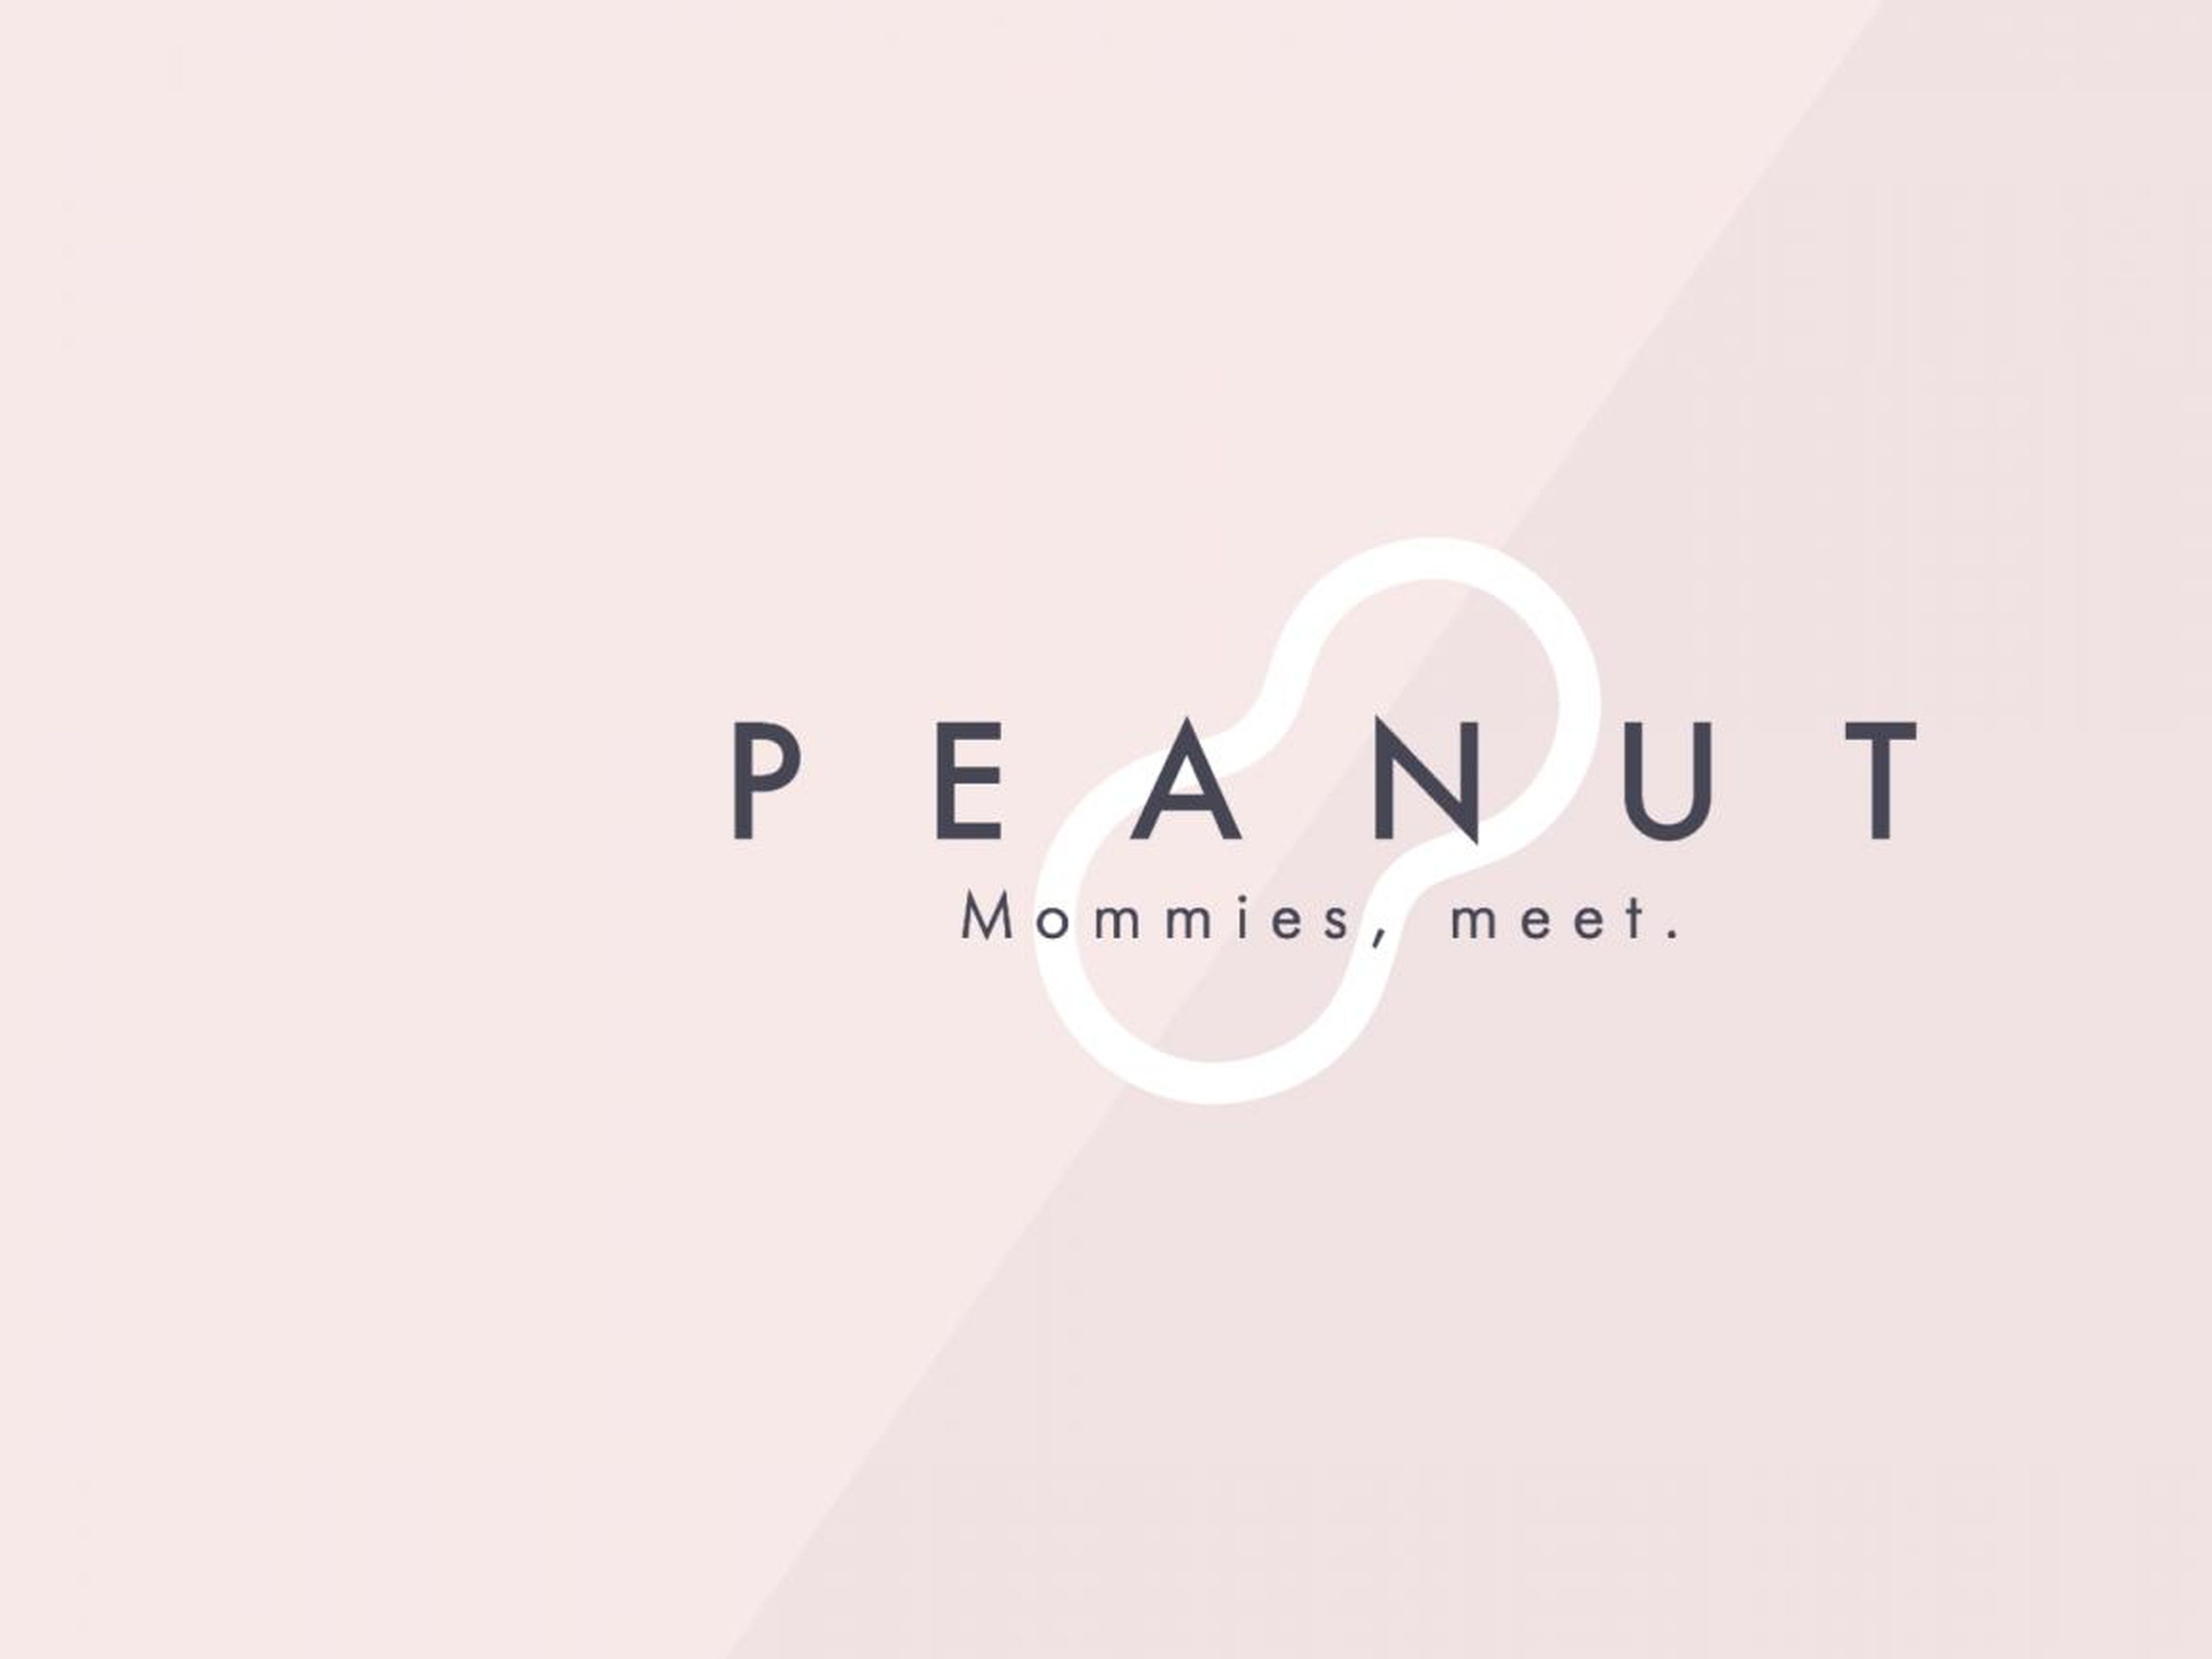 Febrero de 2016: Greg Orlowski deja la compañía sin hacer ruido. Cofunda Peanut con Michelle Kennedy, una app de reuniones para mamás.